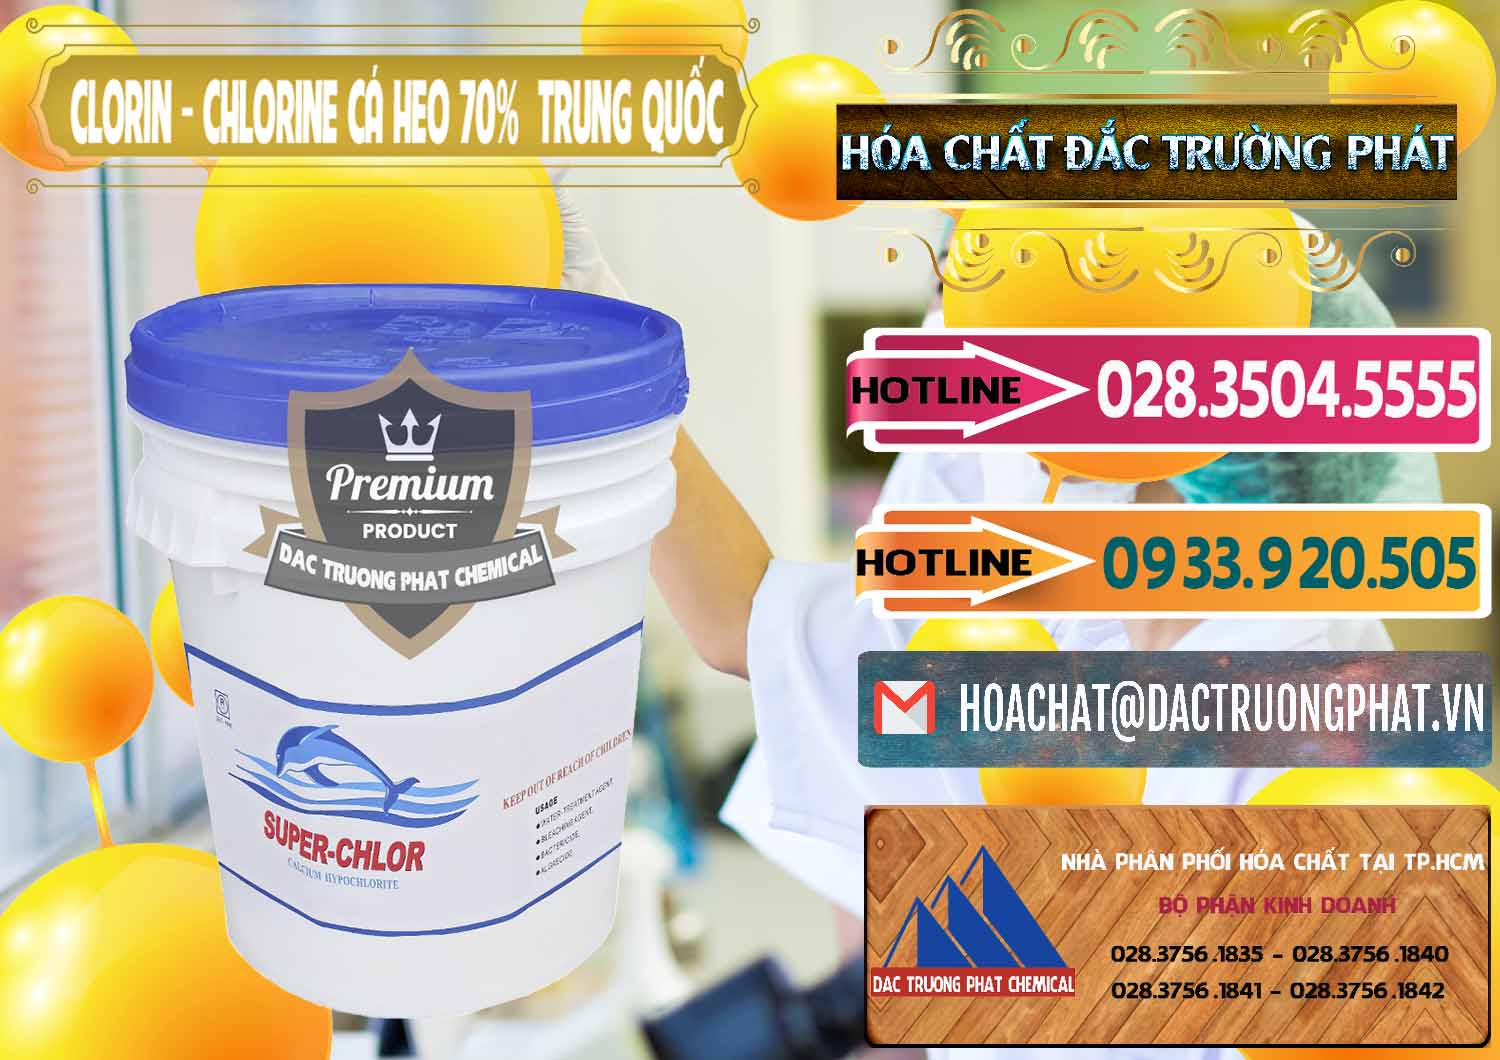 Công ty bán và cung cấp Clorin - Chlorine Cá Heo 70% Super Chlor Nắp Xanh Trung Quốc China - 0209 - Đơn vị bán ( phân phối ) hóa chất tại TP.HCM - dactruongphat.vn